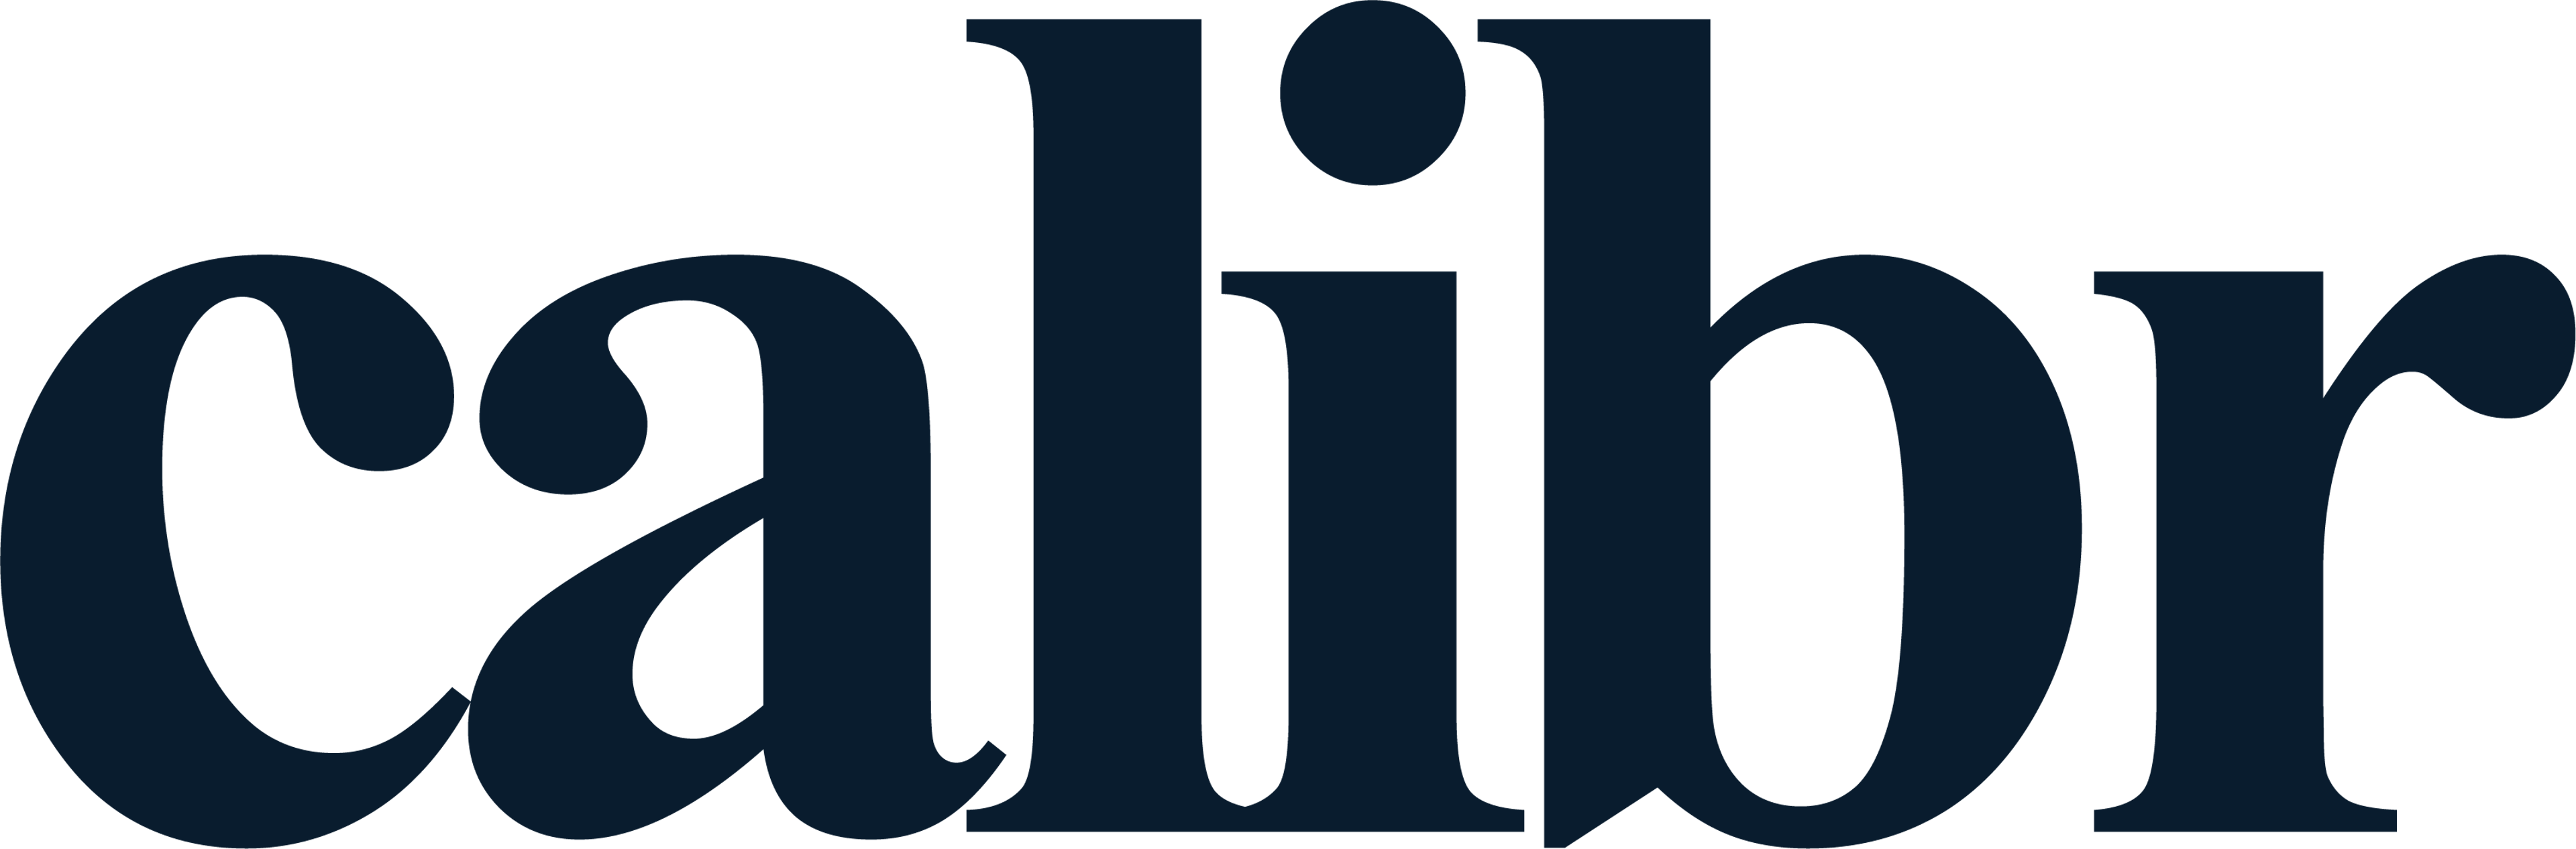 Calibr Logo